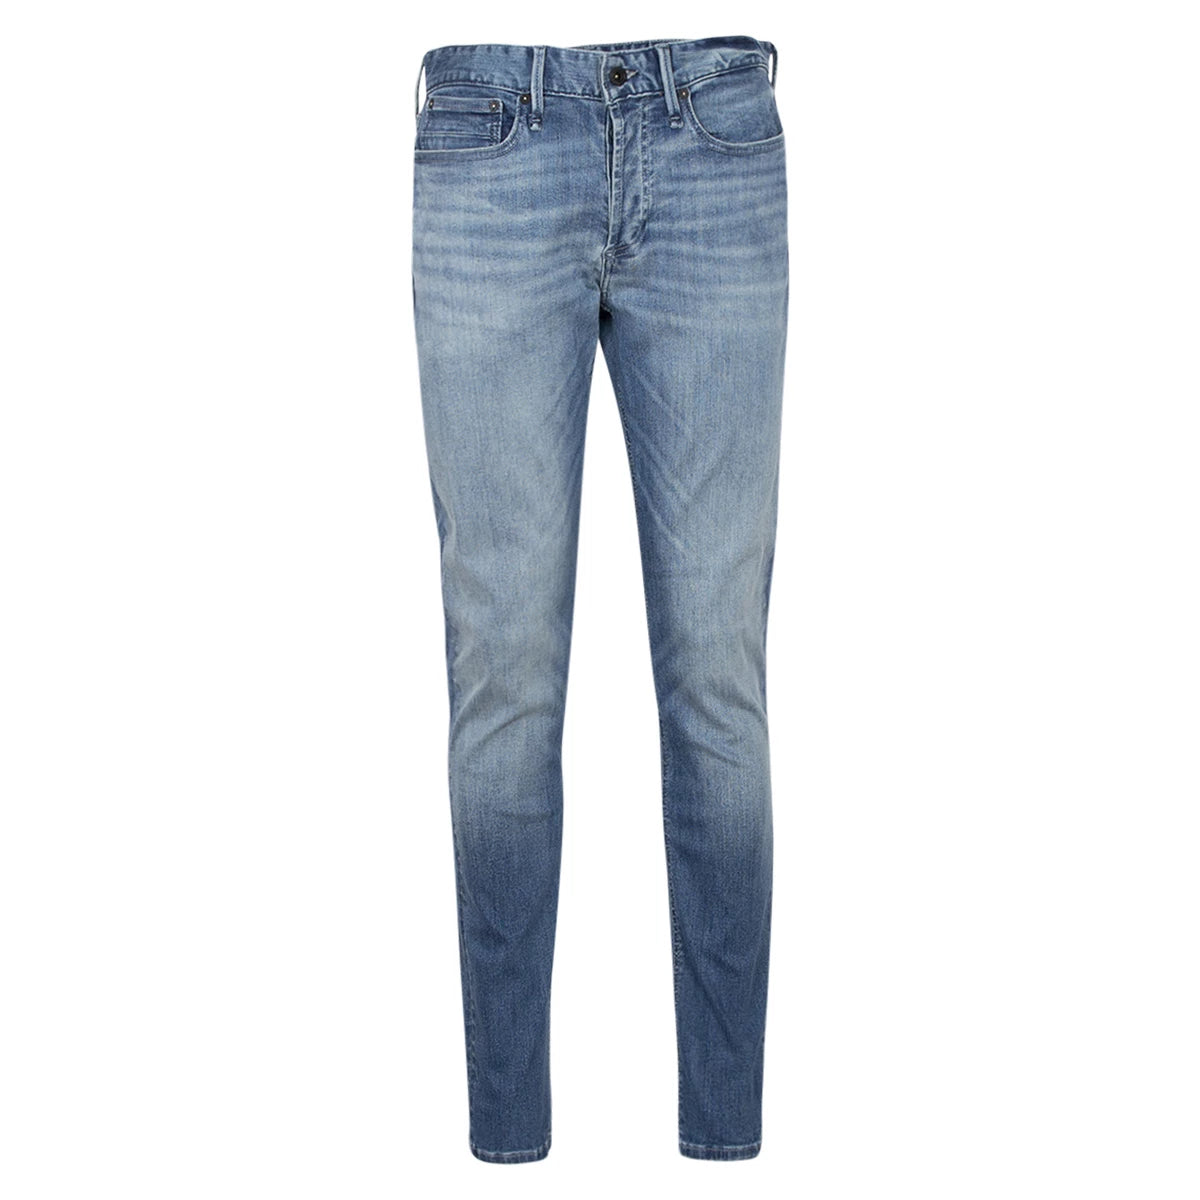 Denham Razor slim fit jeans blauw